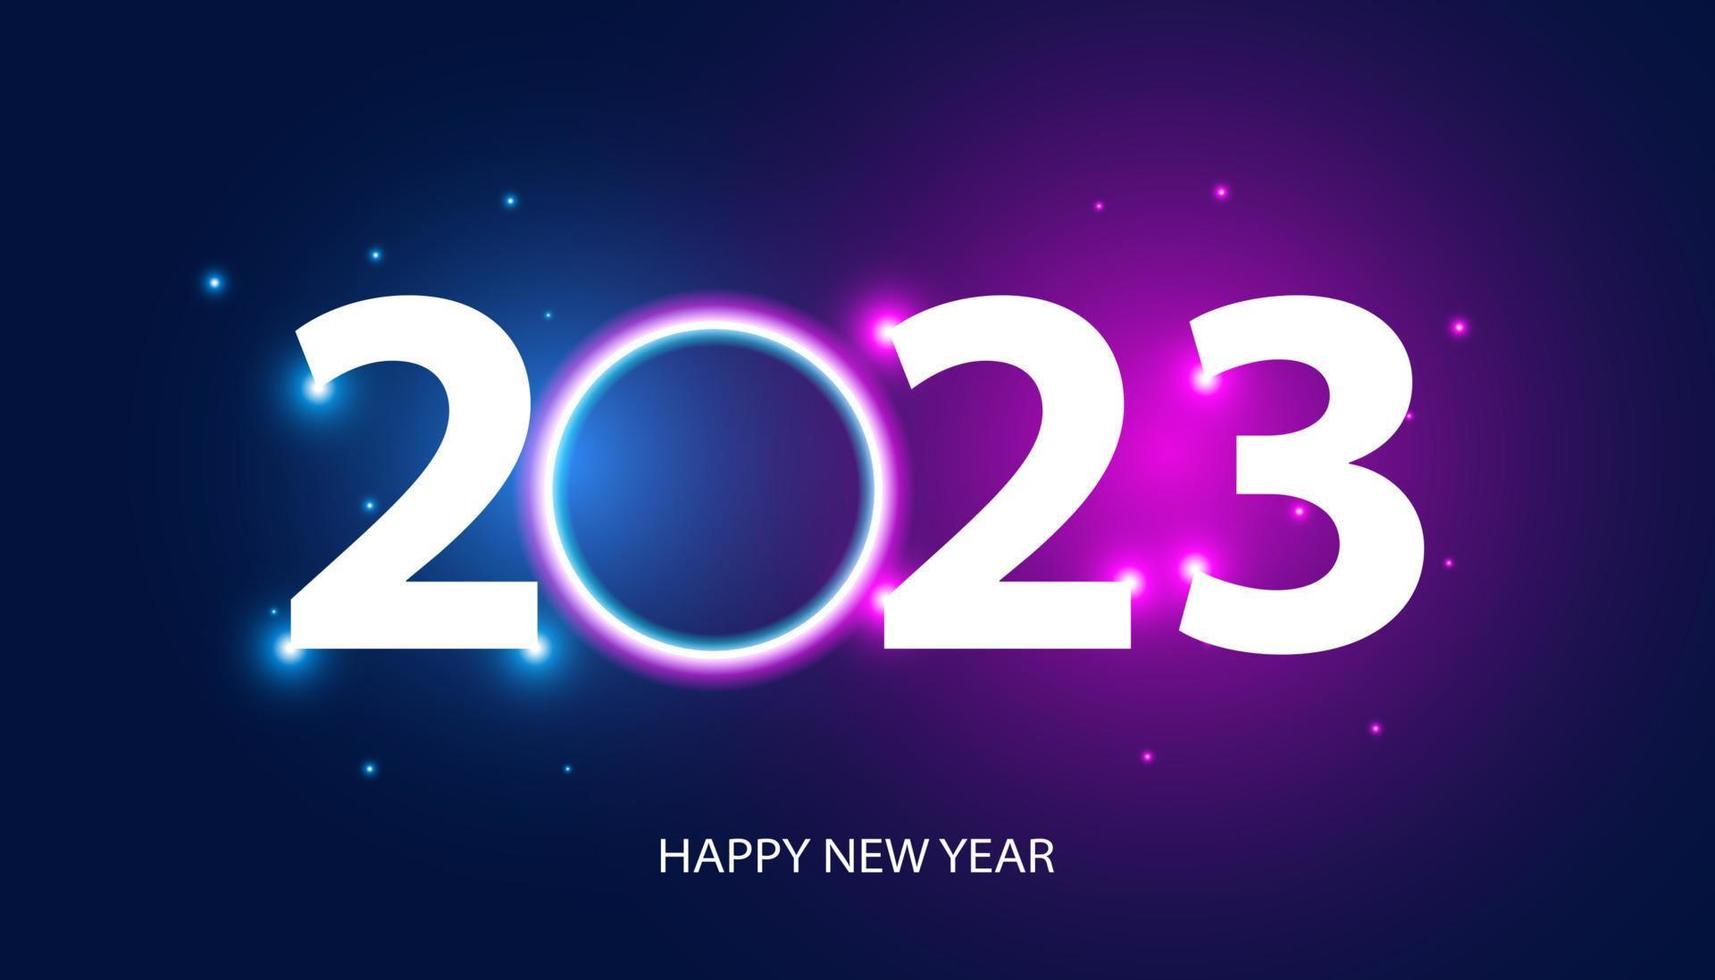 abstrait bonne année 2023 réseau numérique de lumière circulaire sur fond bleu et violet espace de haute technologie moderne futuriste numérique vecteur